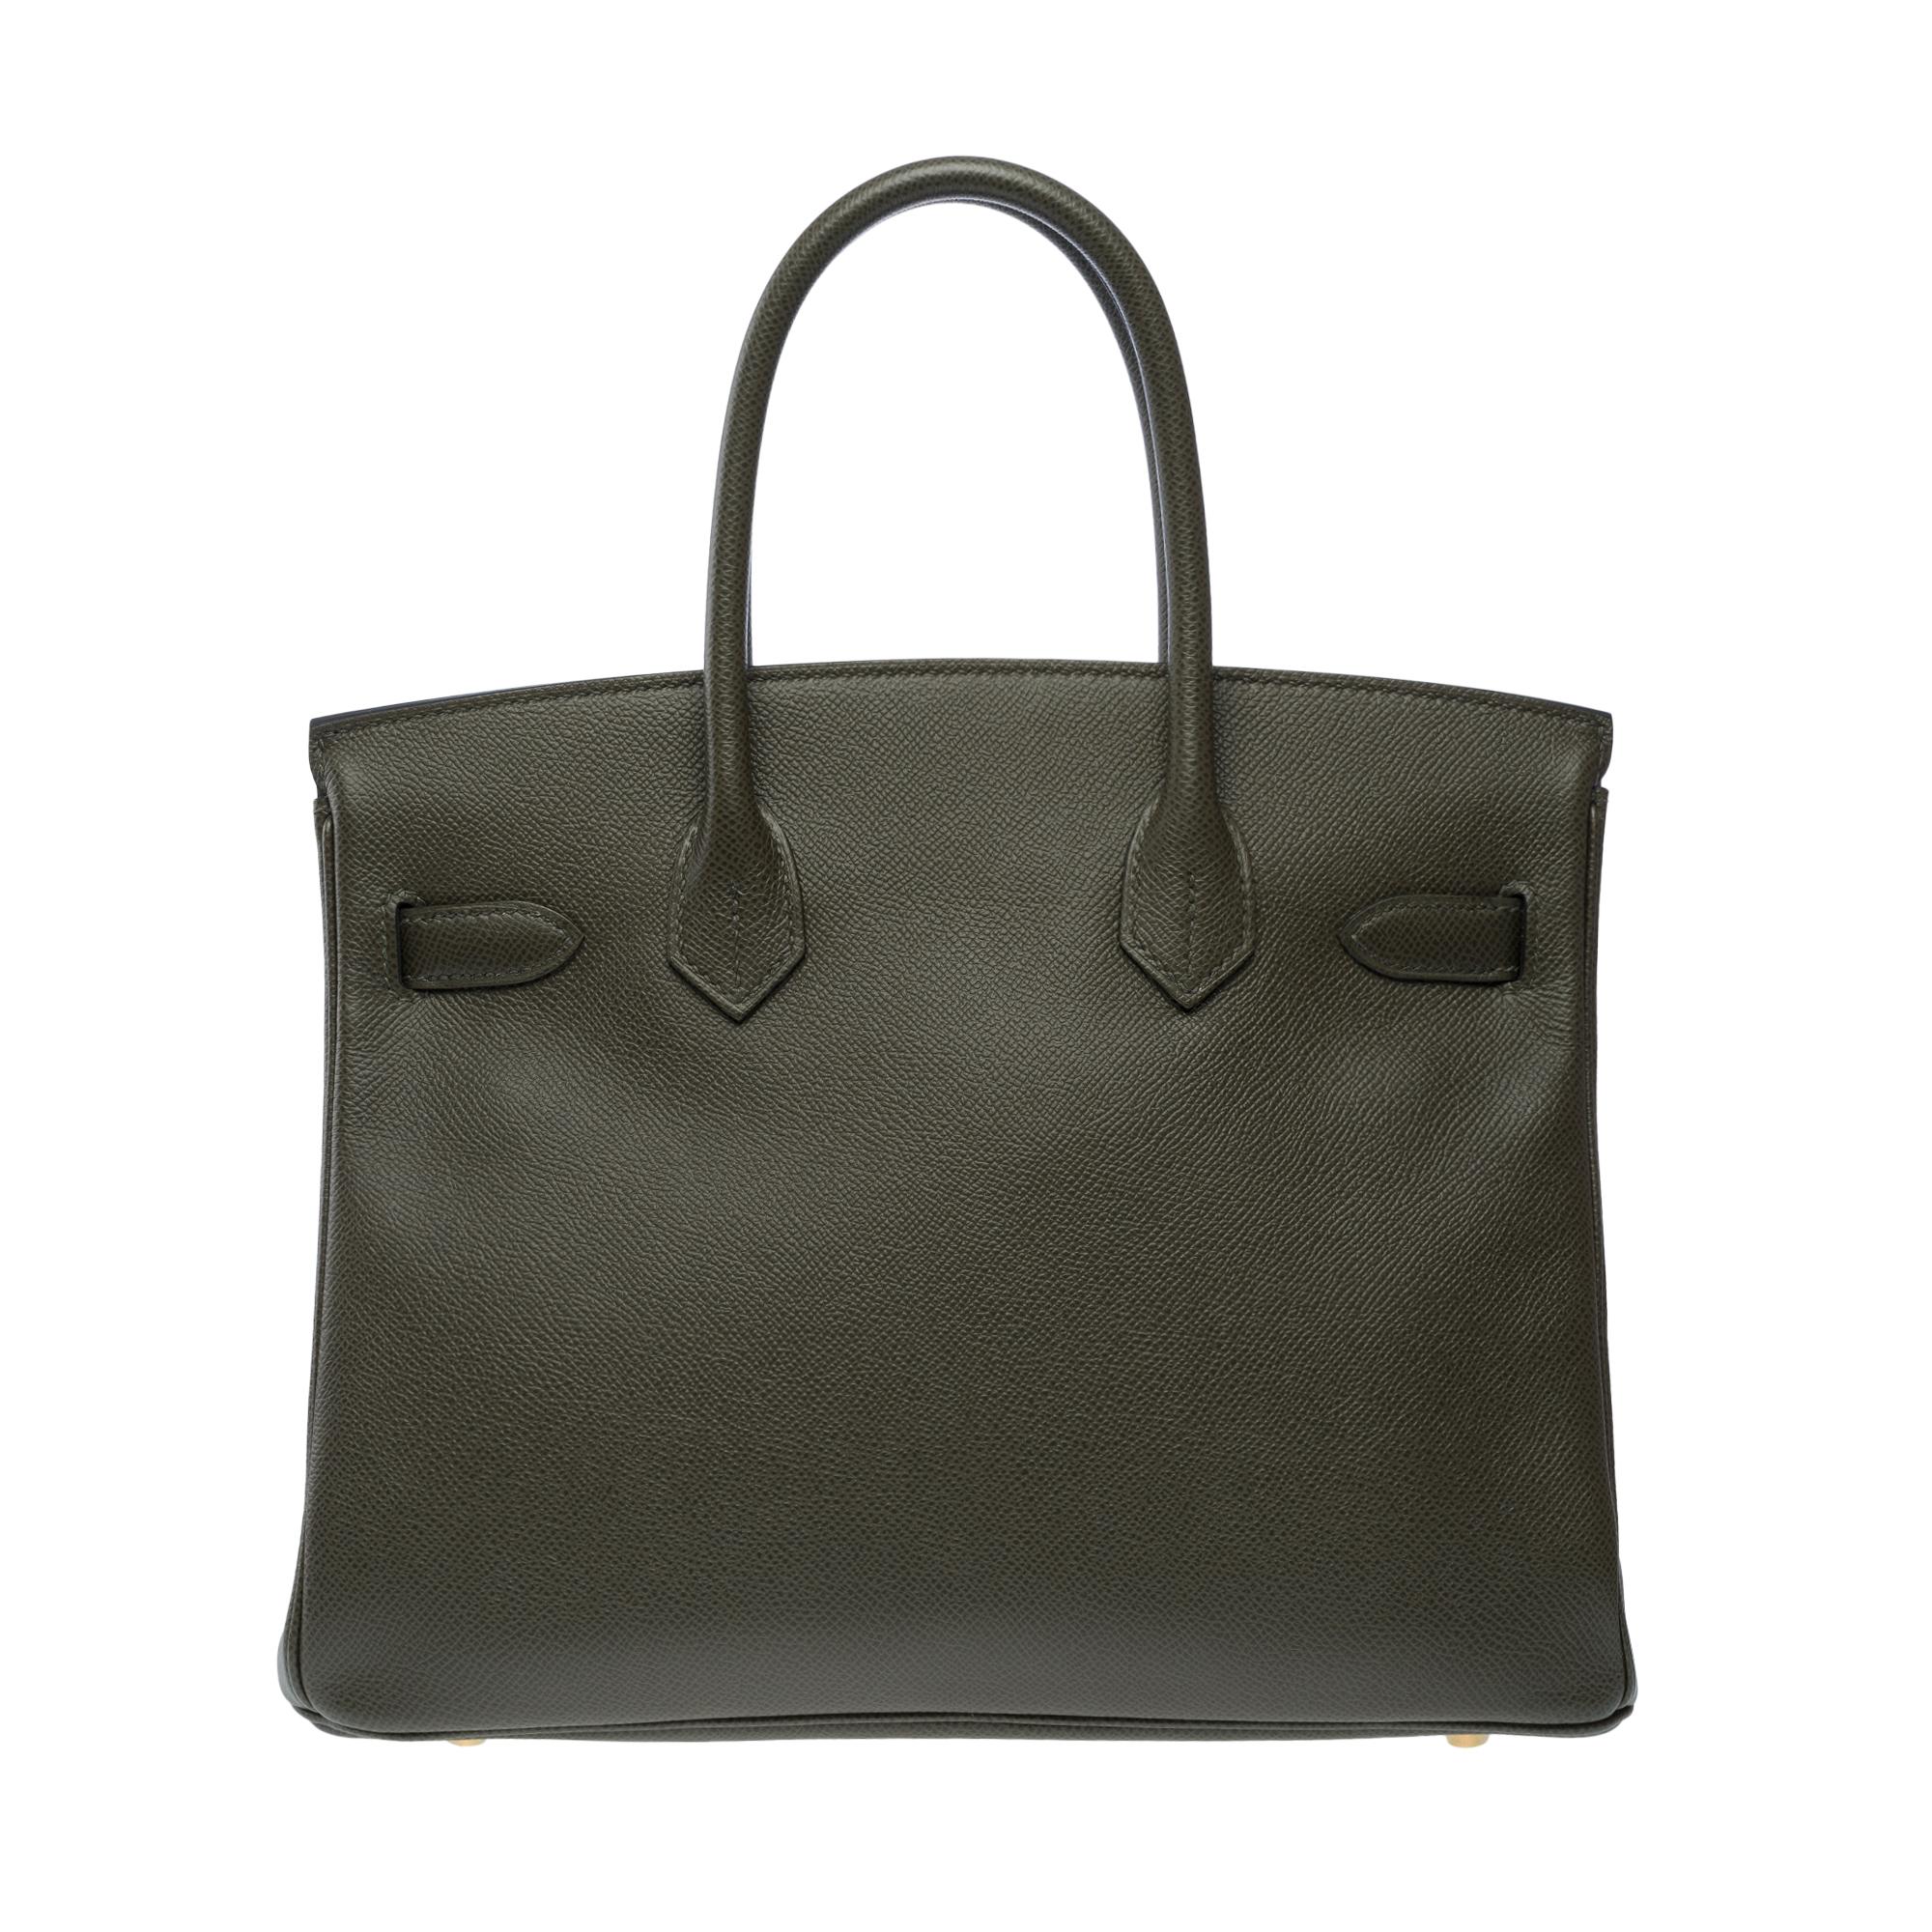 Splendid Hermes Birkin 30 handbag in Vert de Gris Epsom leather, SHW In New Condition For Sale In Paris, IDF